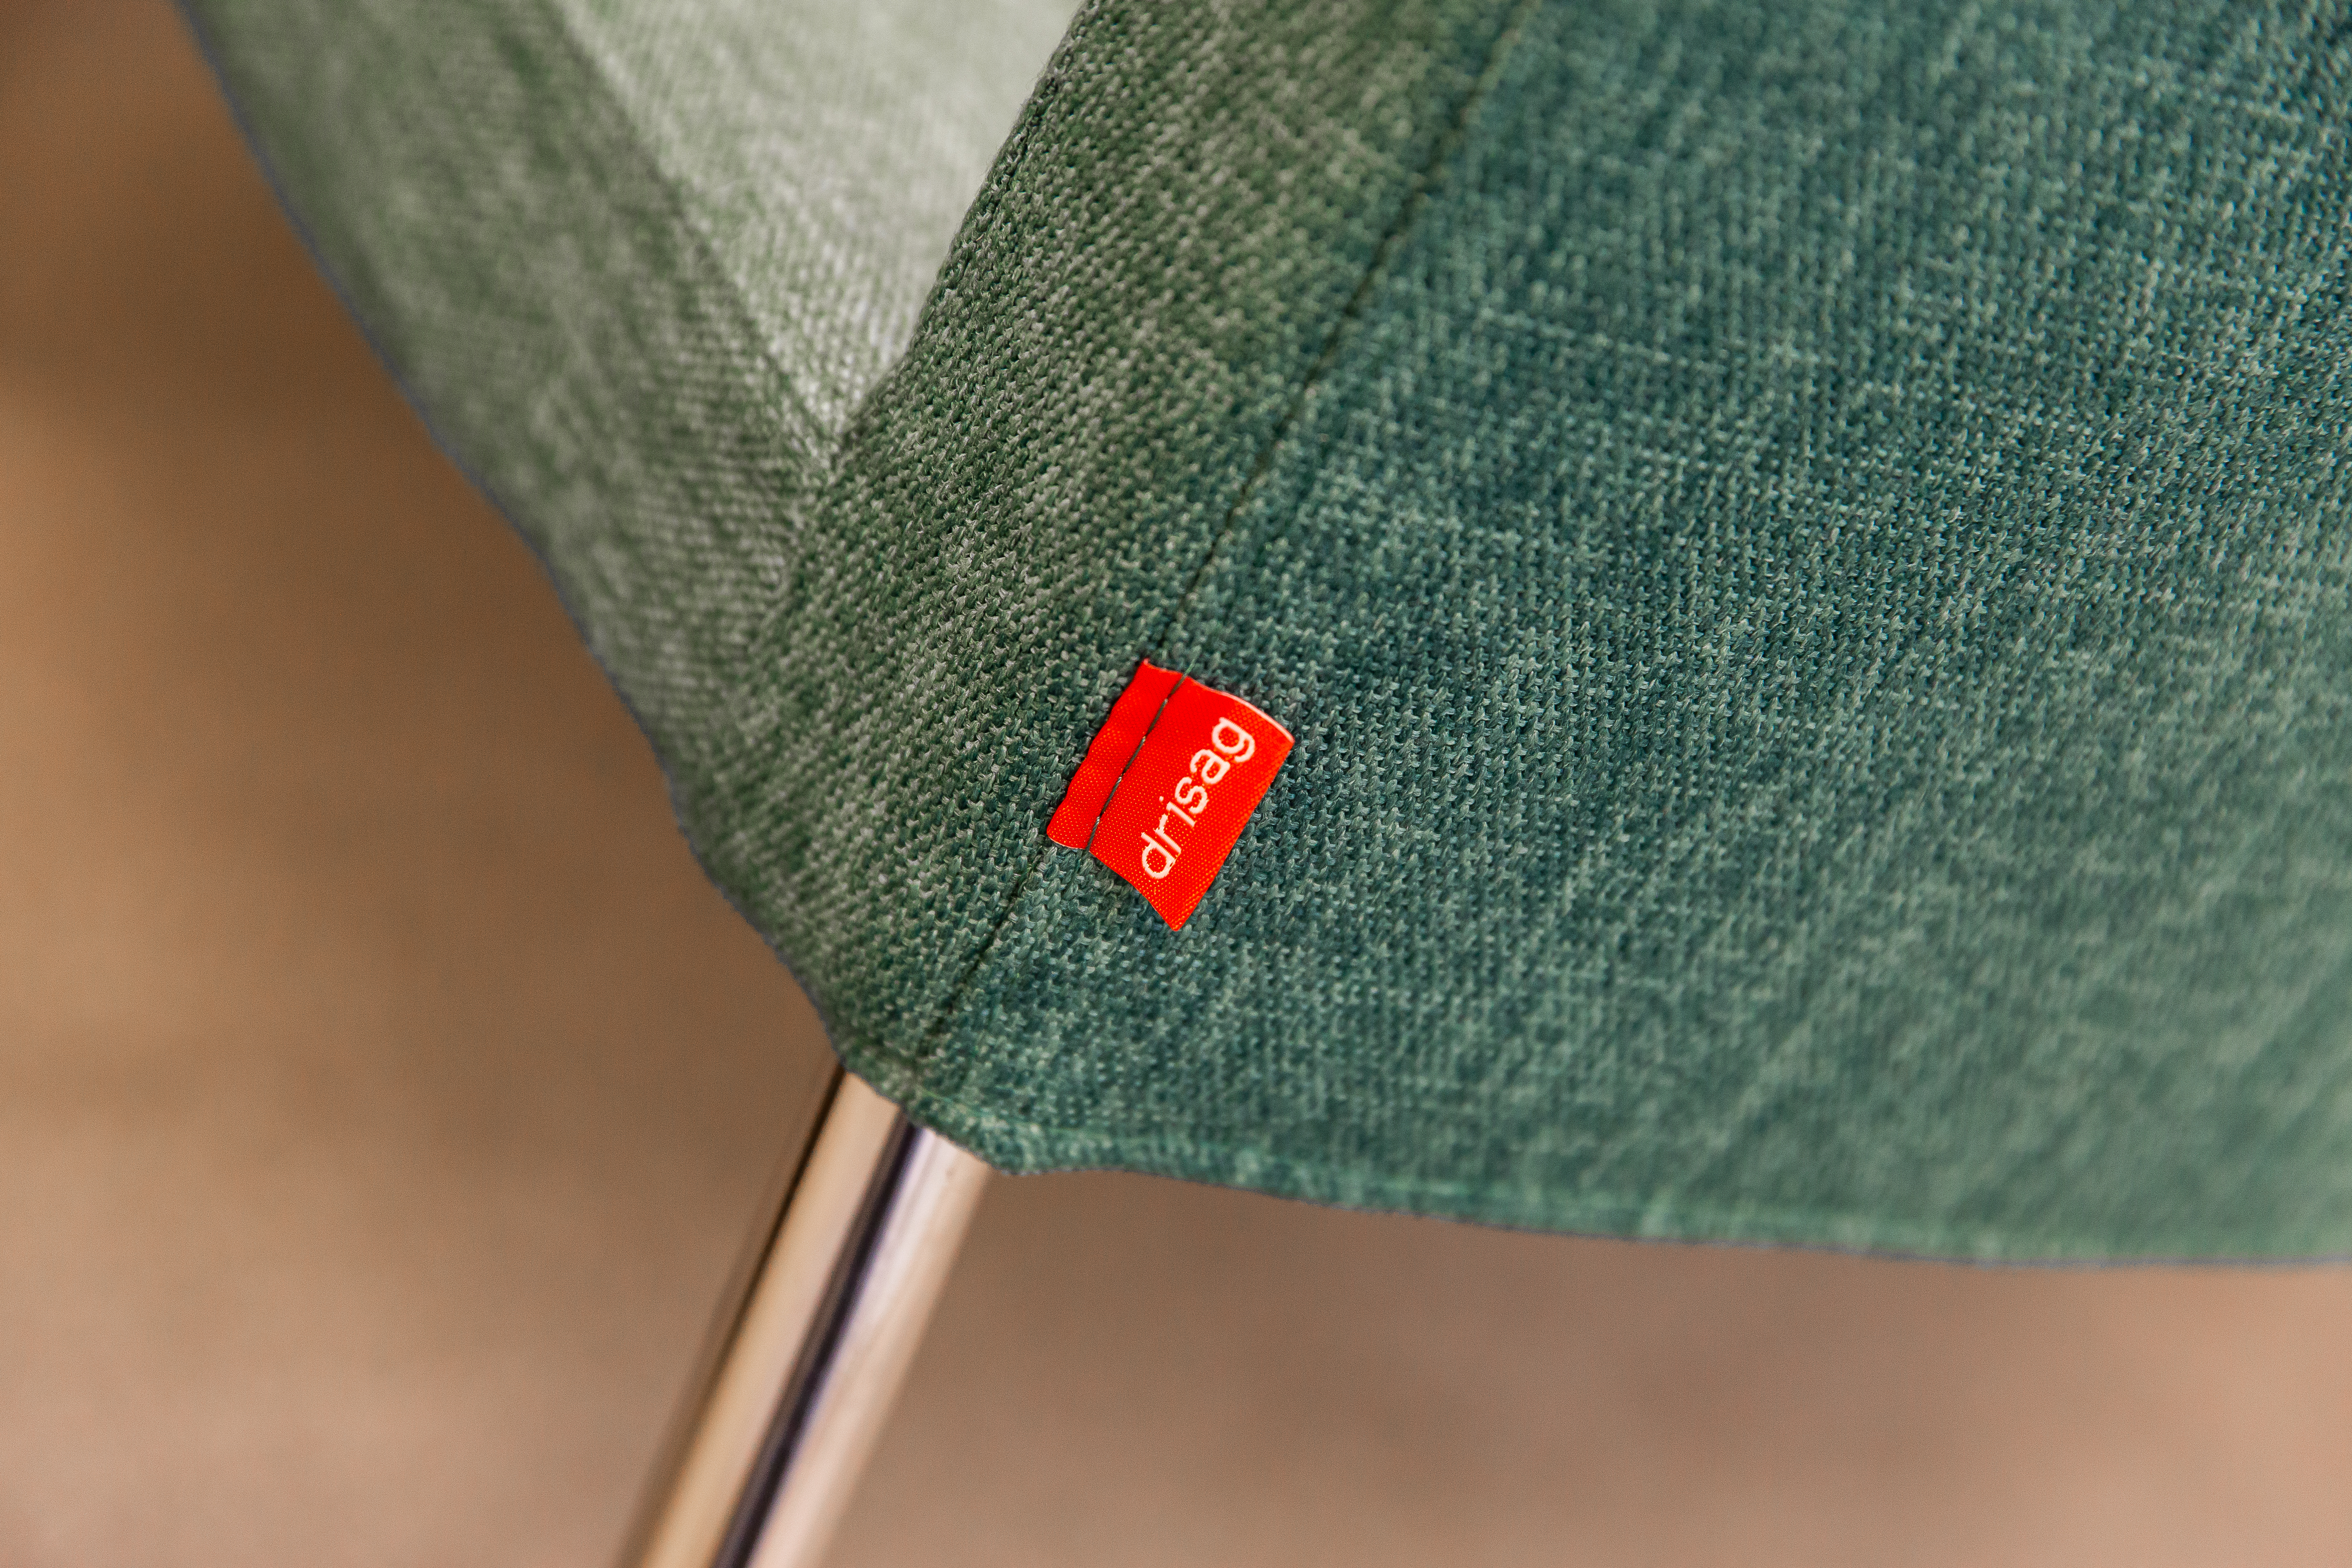 detail van het drisag logo op een stoel